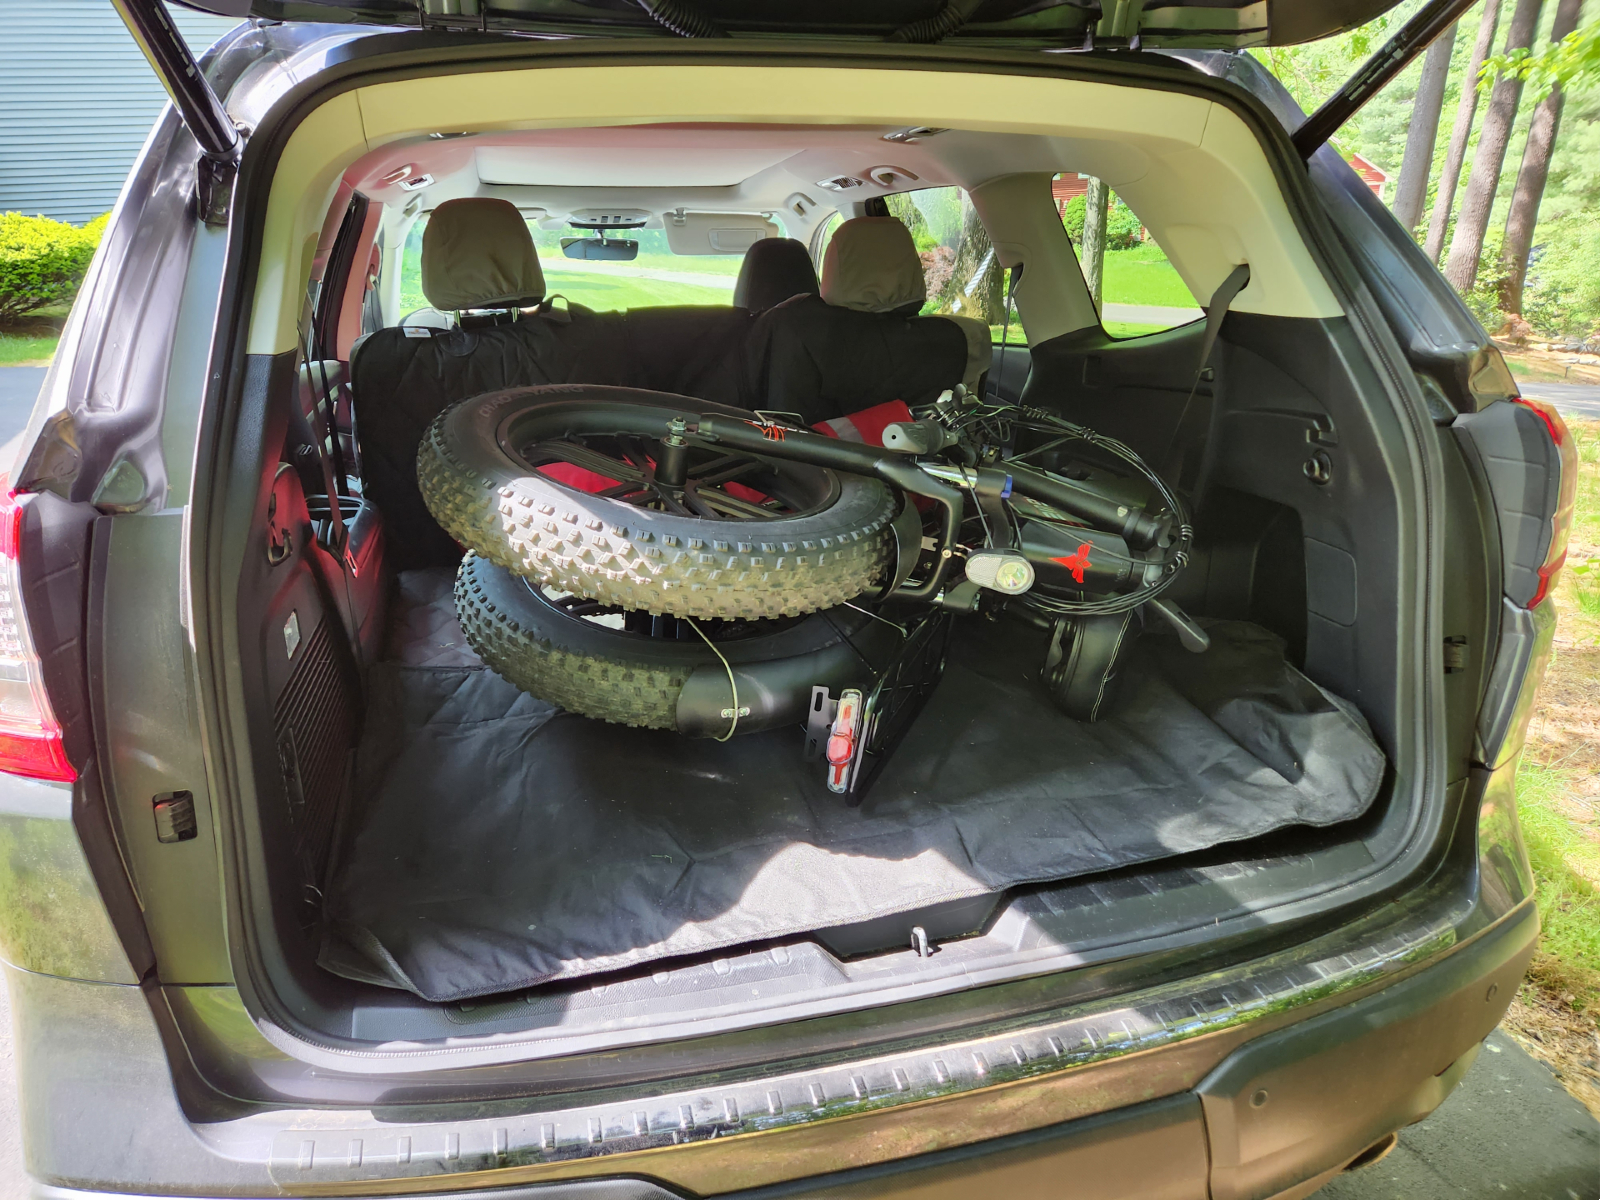 ENGWE EP-2 Pro e-bisiklet, bir SUV'un arkasına katlanmış.